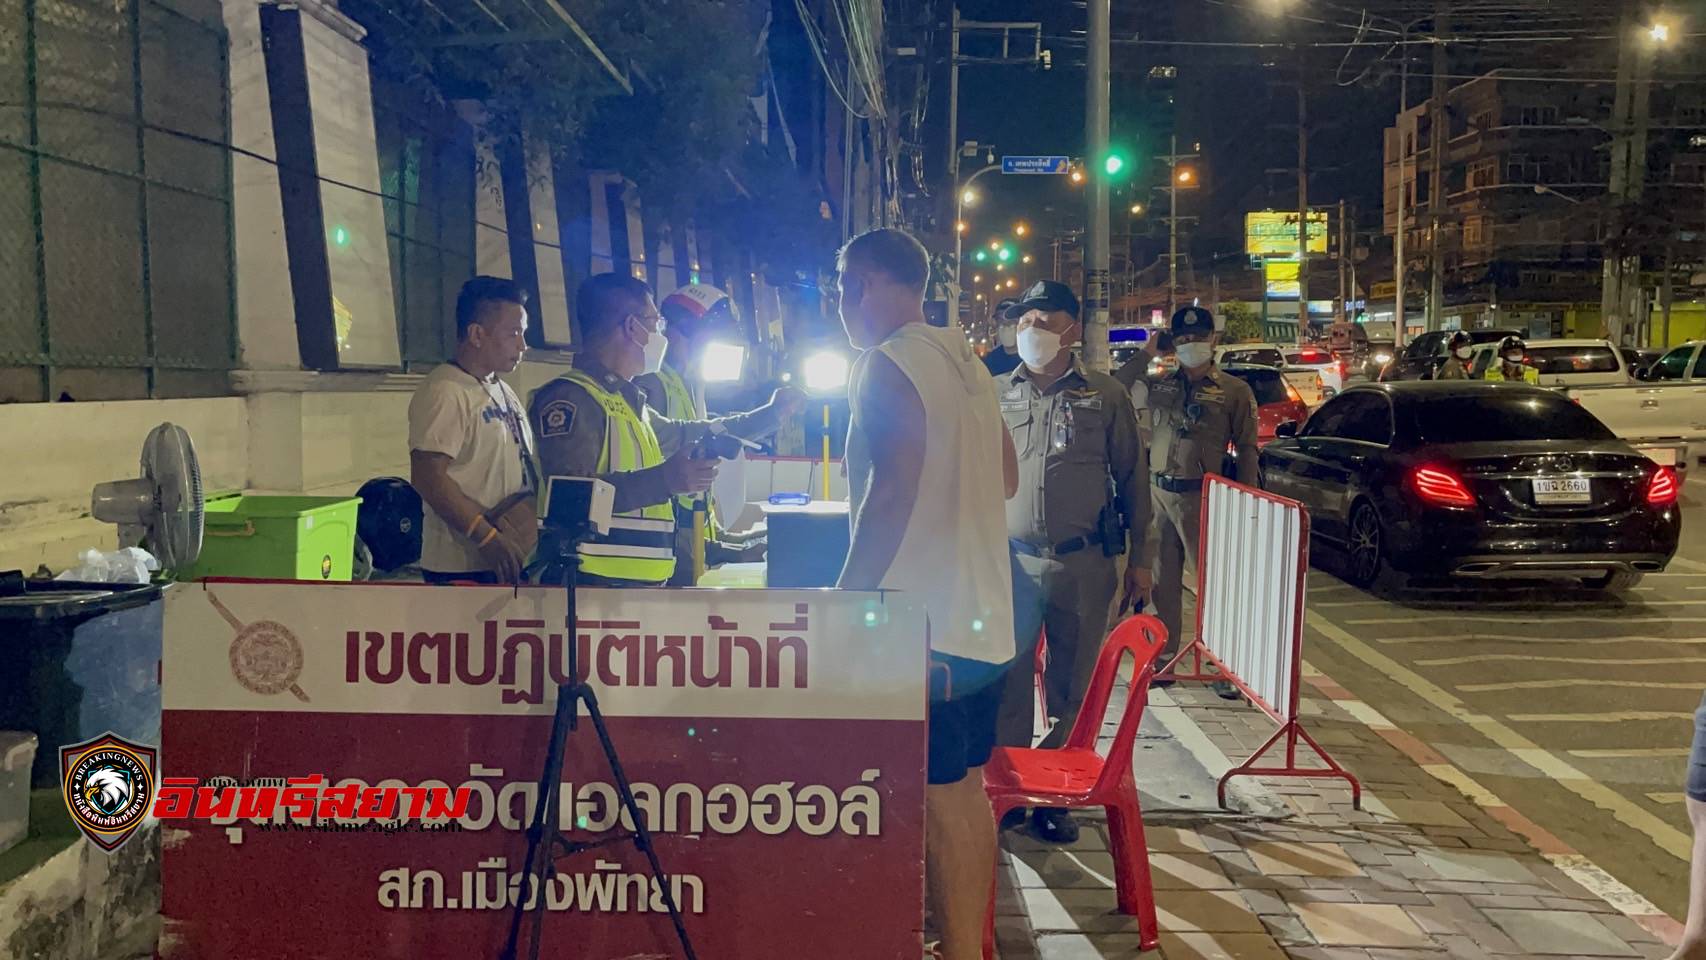 ชลบุรี-ตำรวจพัทยา ตั้งด่าน 7 วันอันตราย เตือนประชาชน นักเที่ยว เมาไม่ขับ